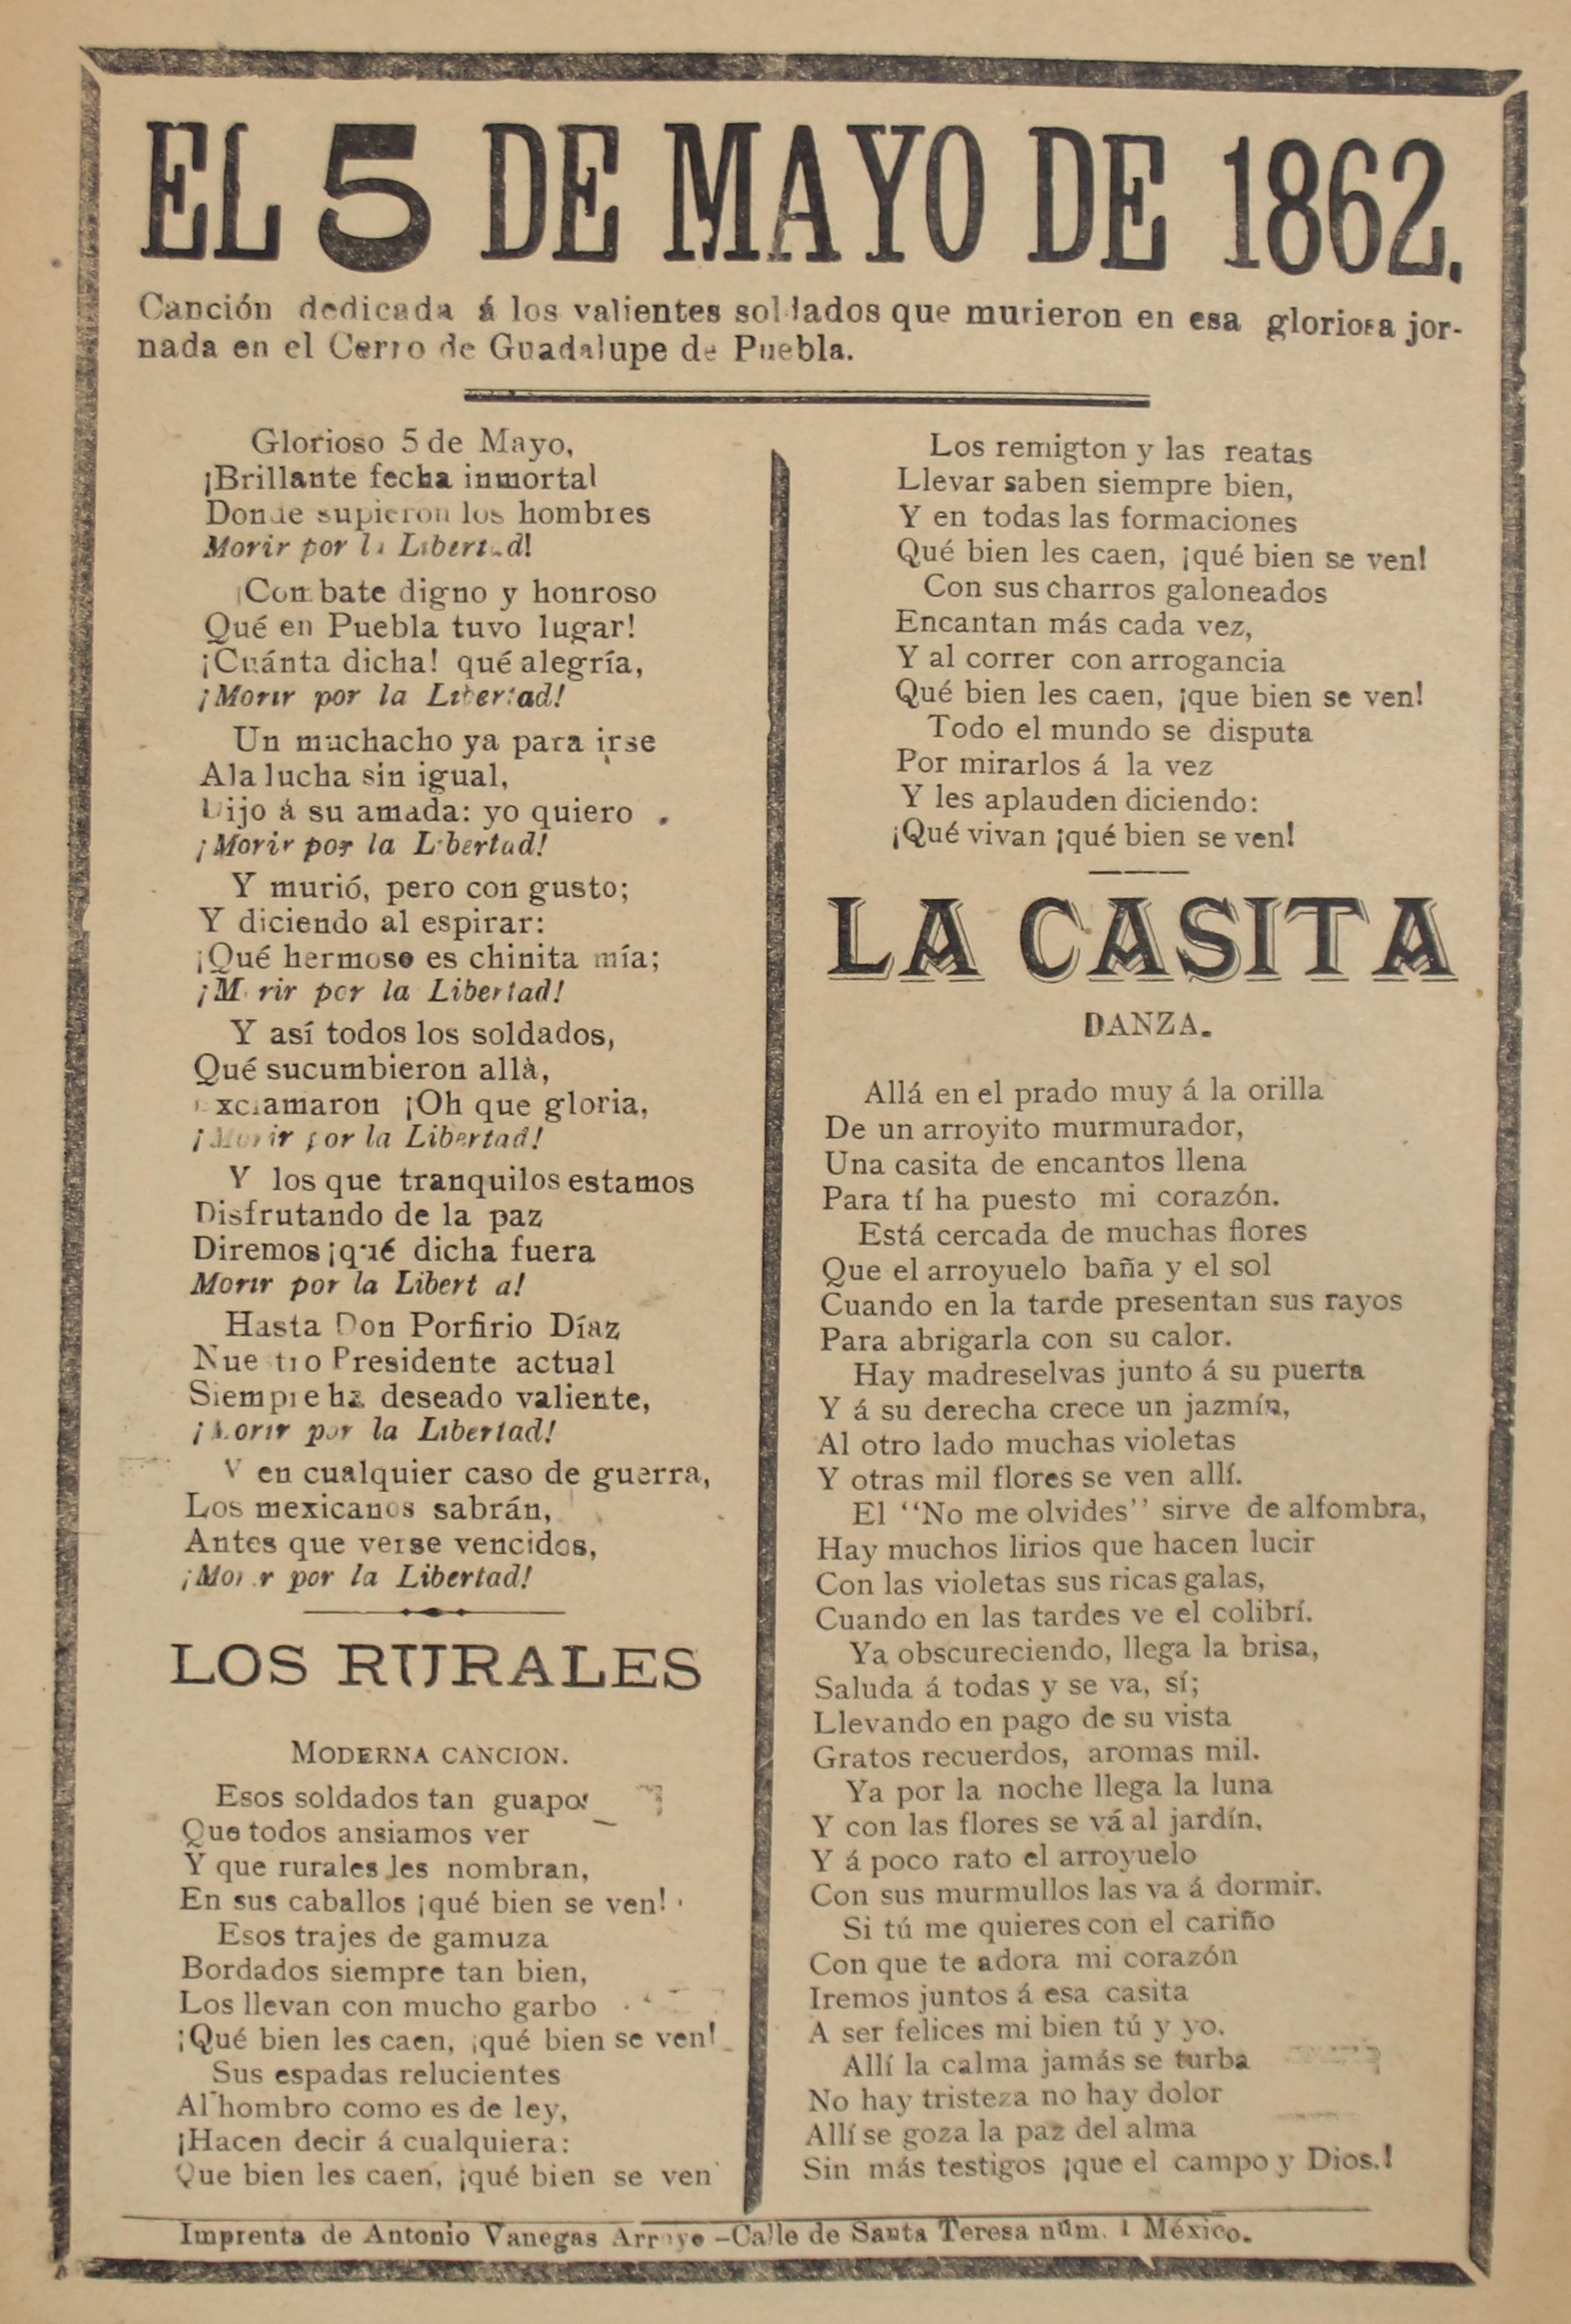 El Cancionero Popular #1 by José Guadalupe Posada